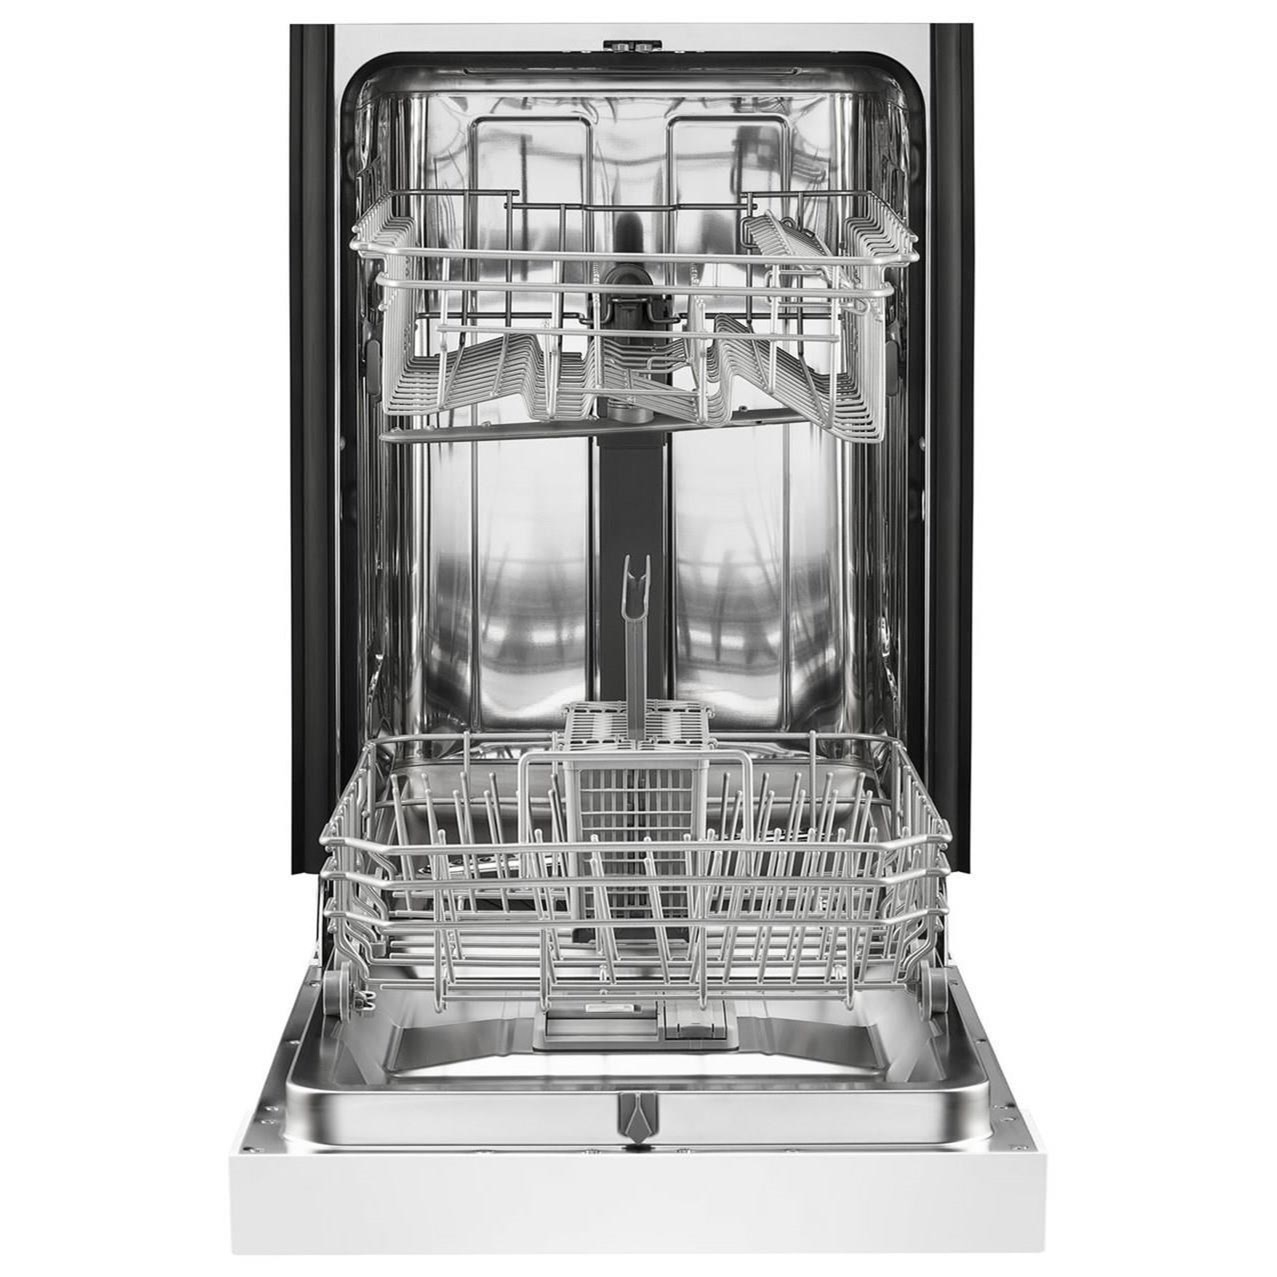 whirlpool dishwasher machine